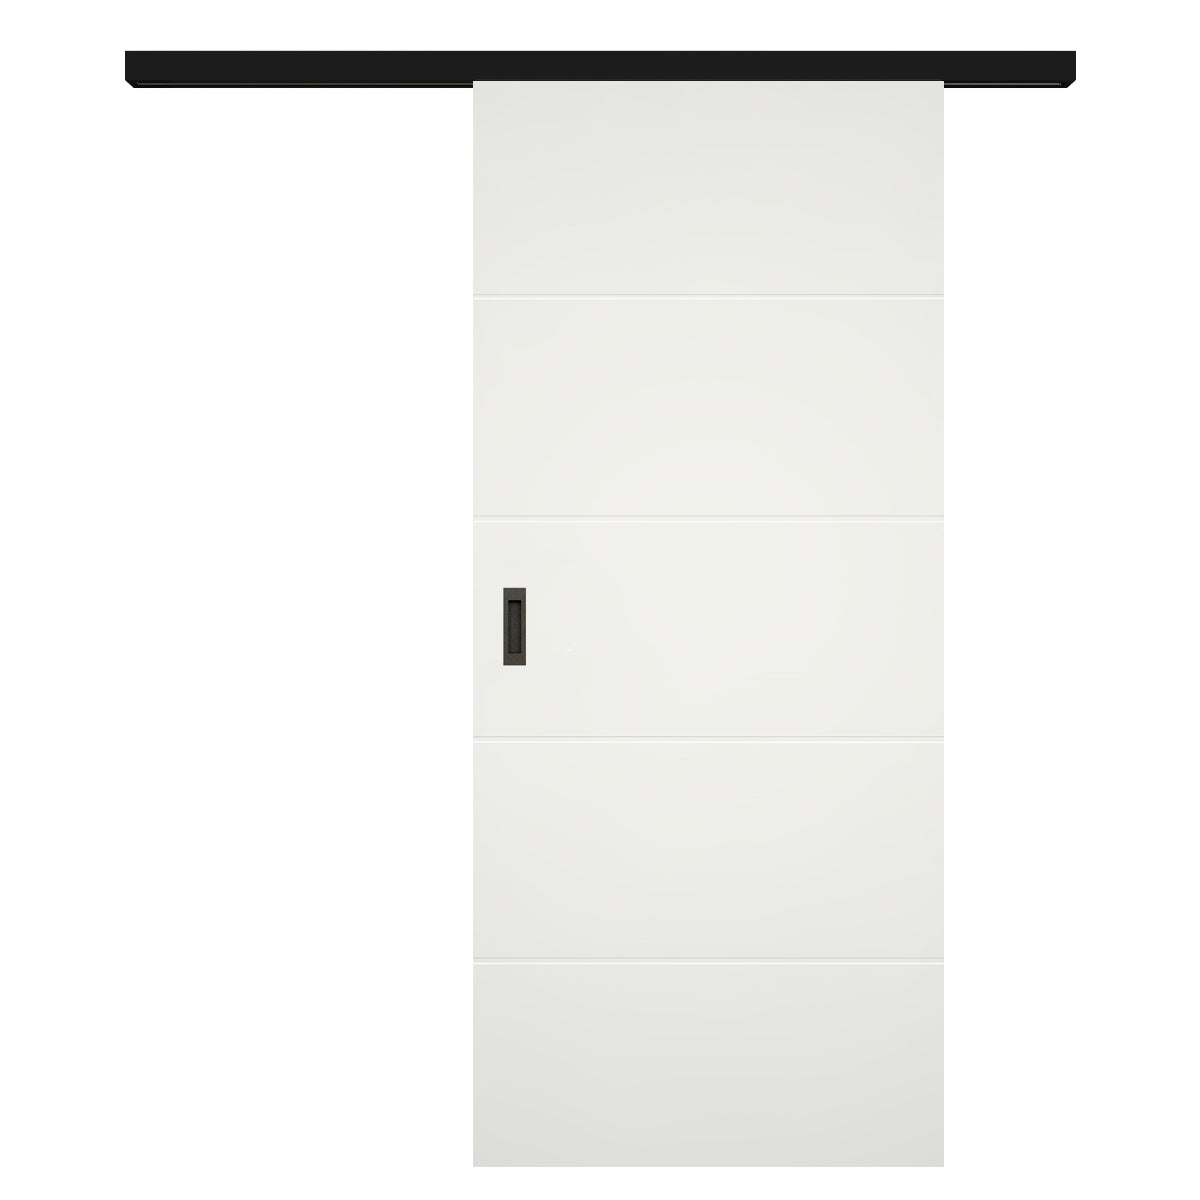 Schiebetür für Set mit schwarzem Laufkasten soft-weiß mit 4 Rillen - Modell Designtür Q41